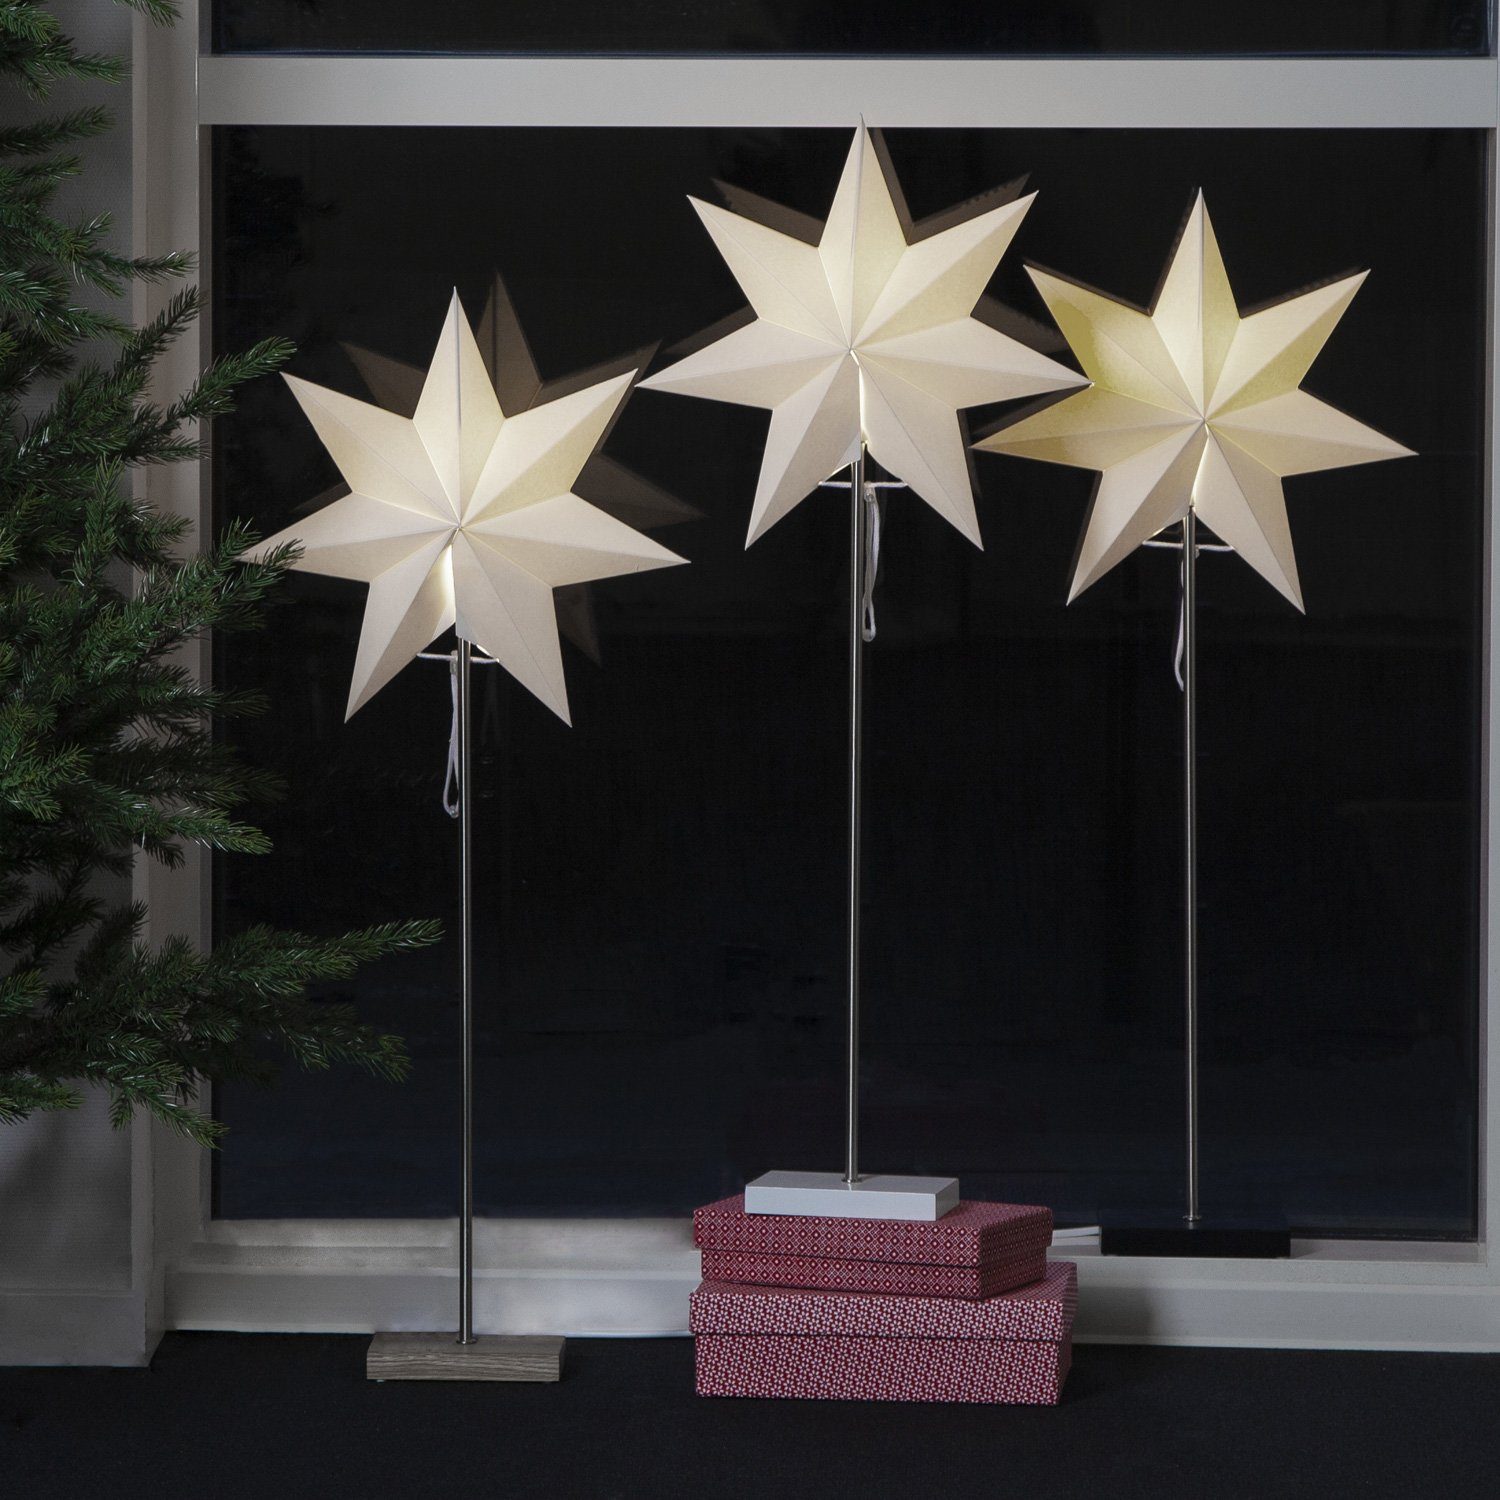 TRADING STAR E14 stehend 80cm Papierstern 7-zackig LED Stehleuchte Stern weiß Weihnachtsstern